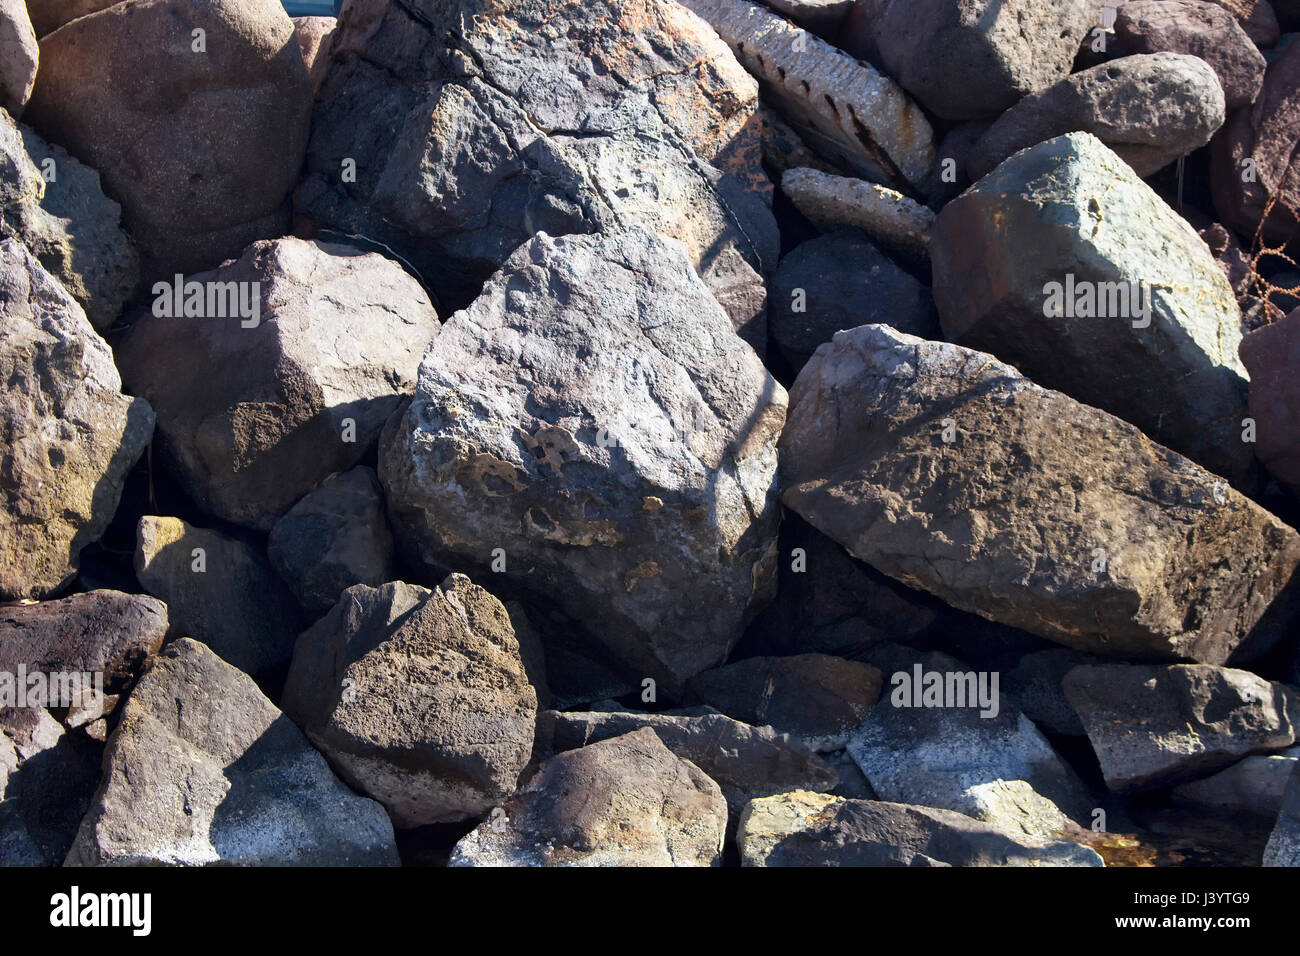 Vista superior de grandes rocas grises (piedras) en el mar Egeo en el suroeste de la ciudad de Bodrum, Turquía. Foto de stock